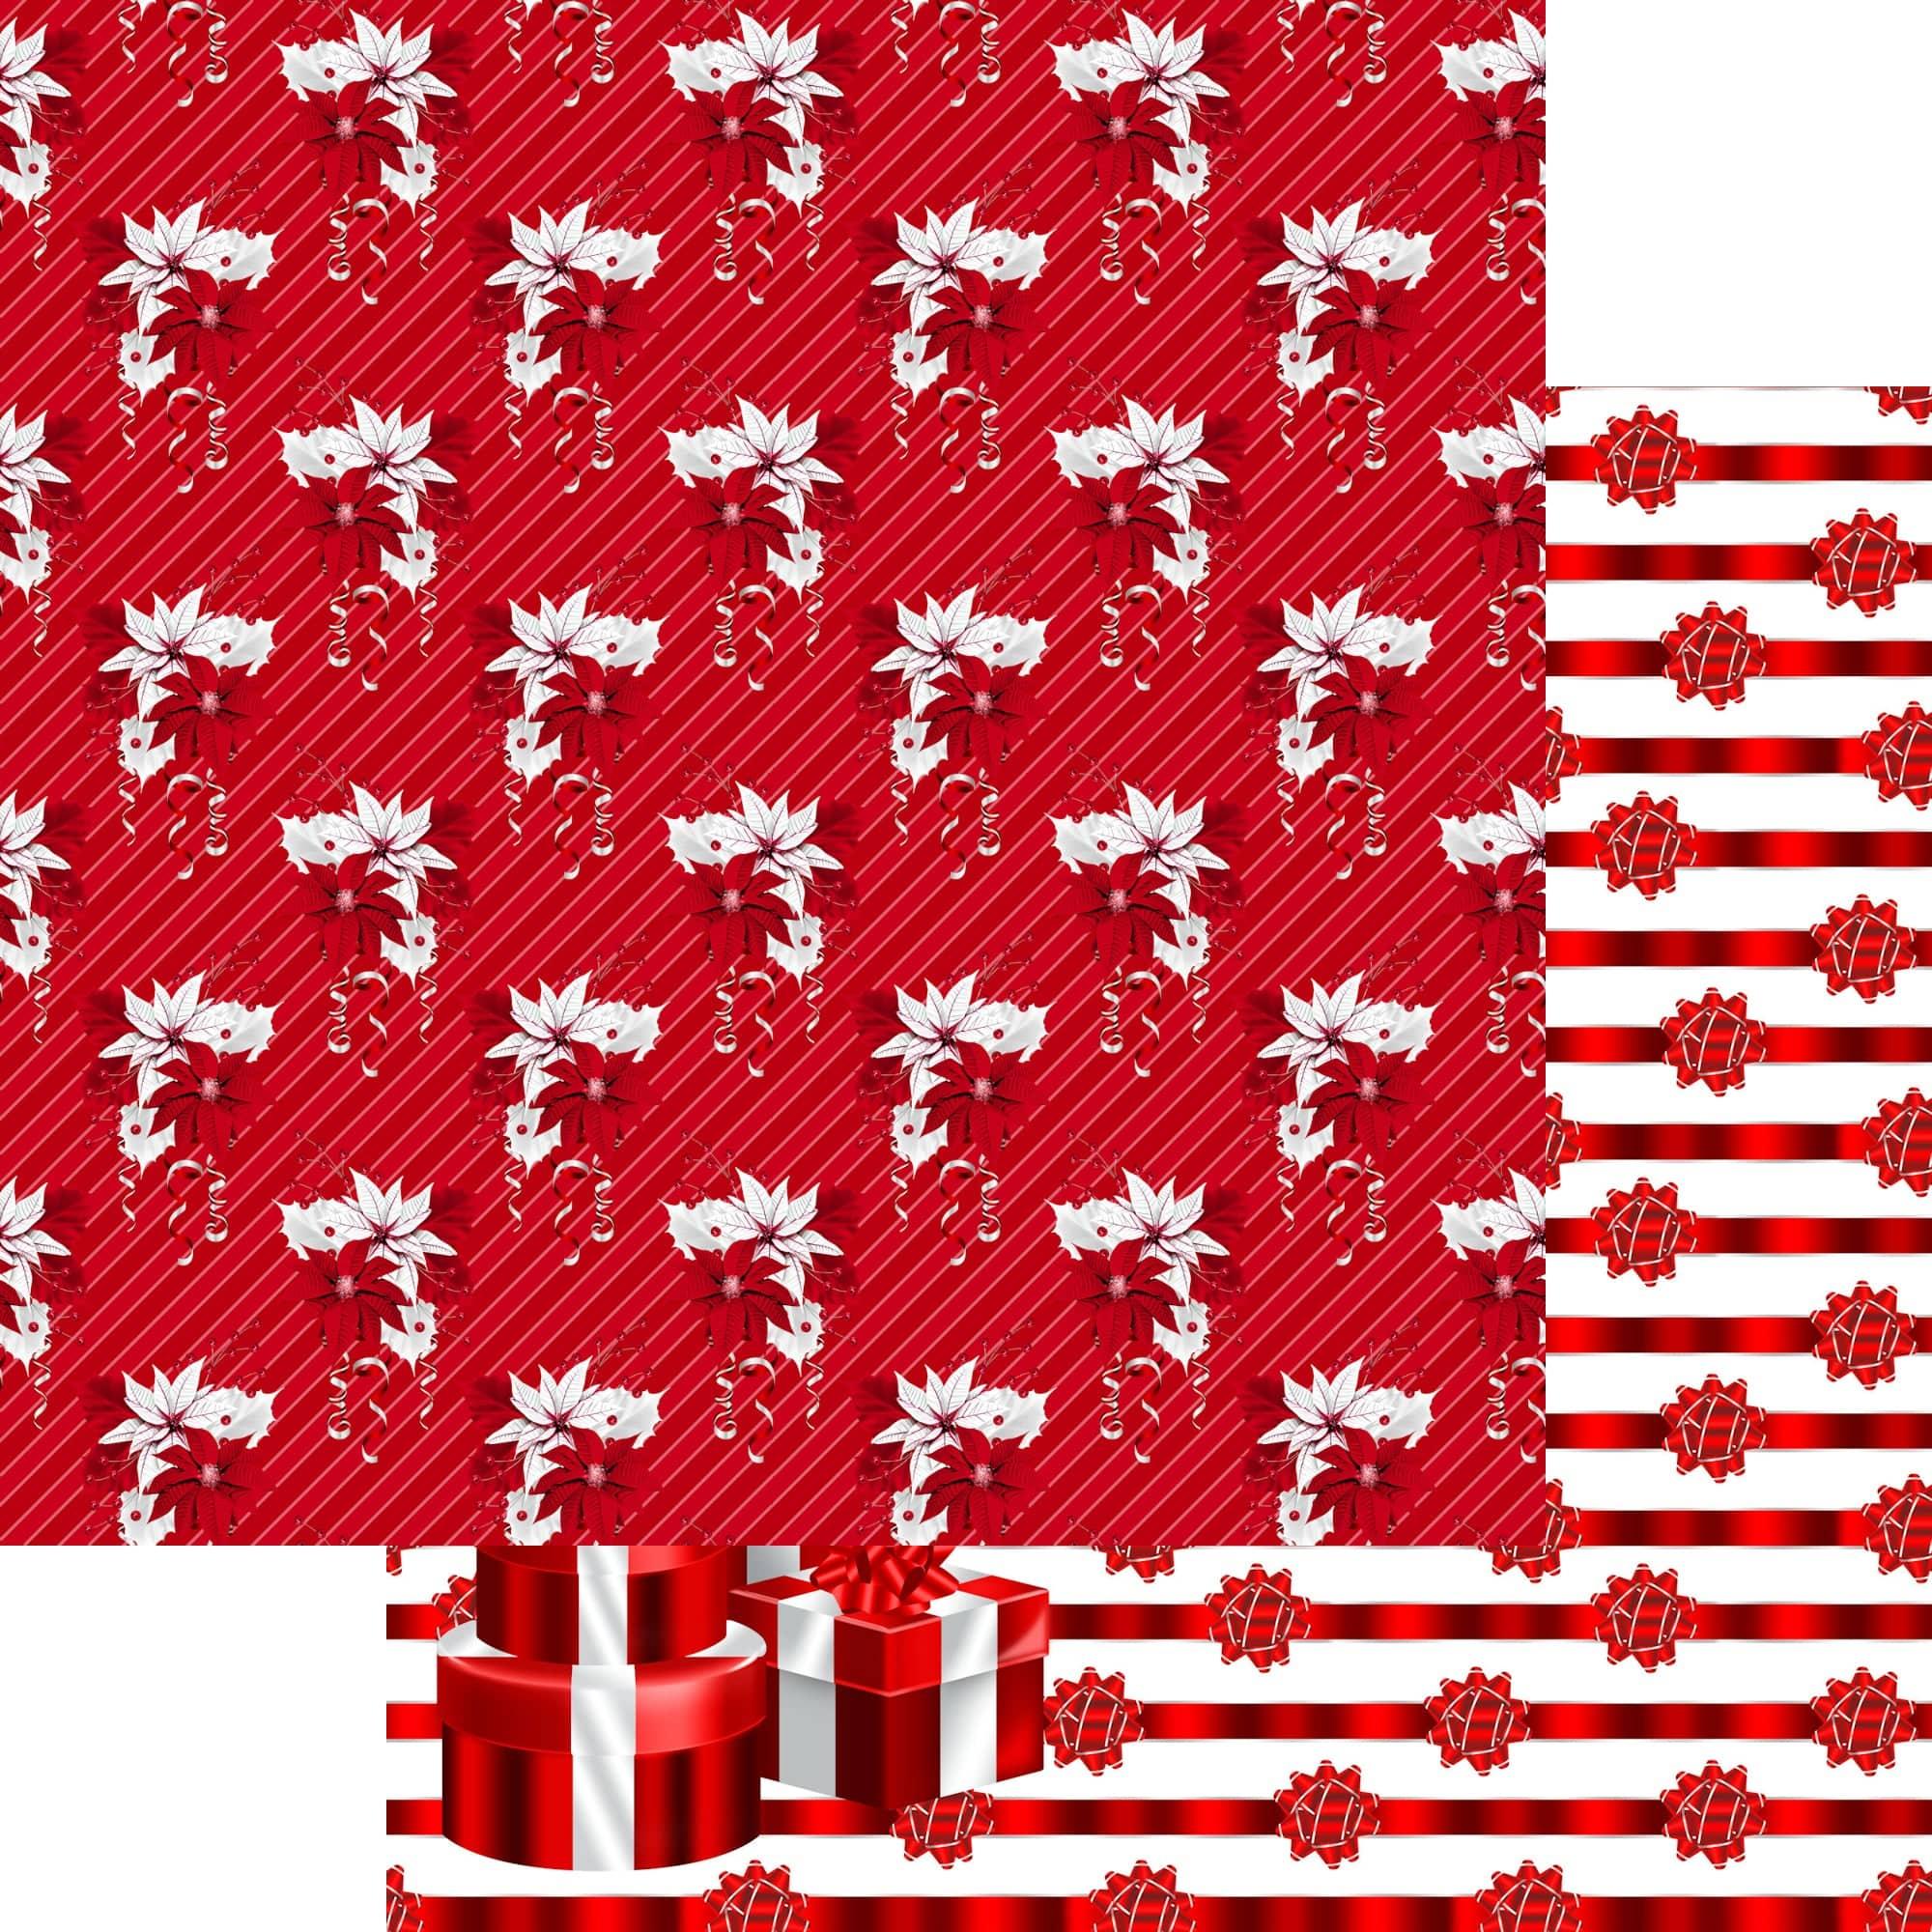 SSC Designs | Peppermint Christmas Merry Christmas Scrapbook Paper